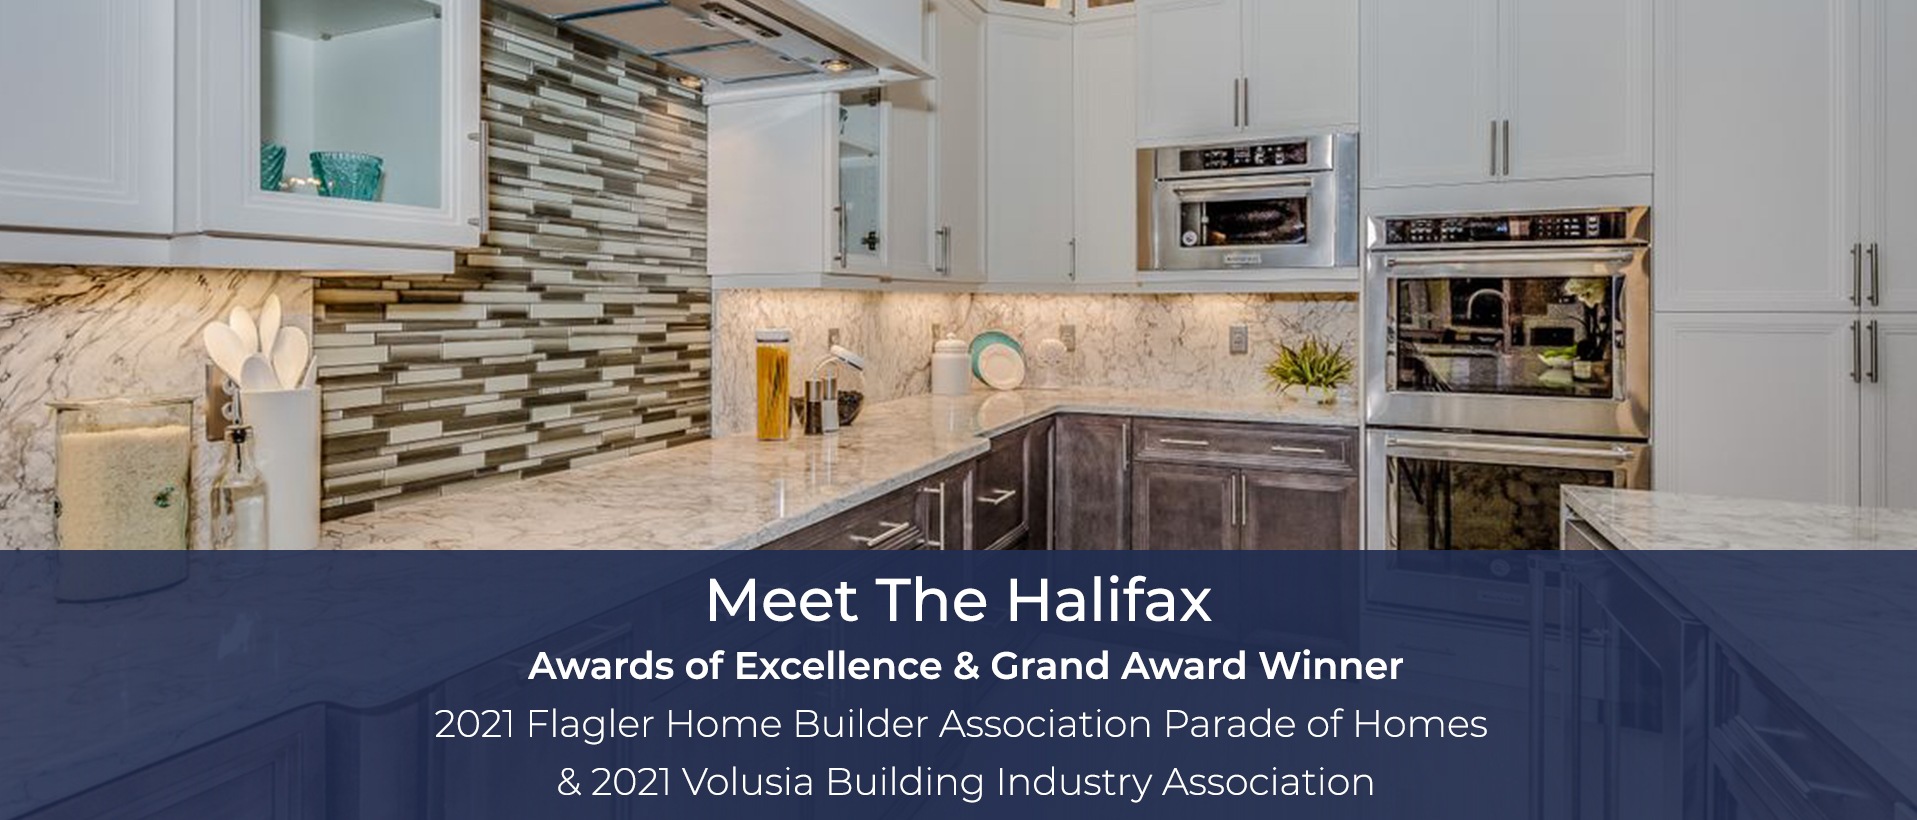 Meet The Halifax